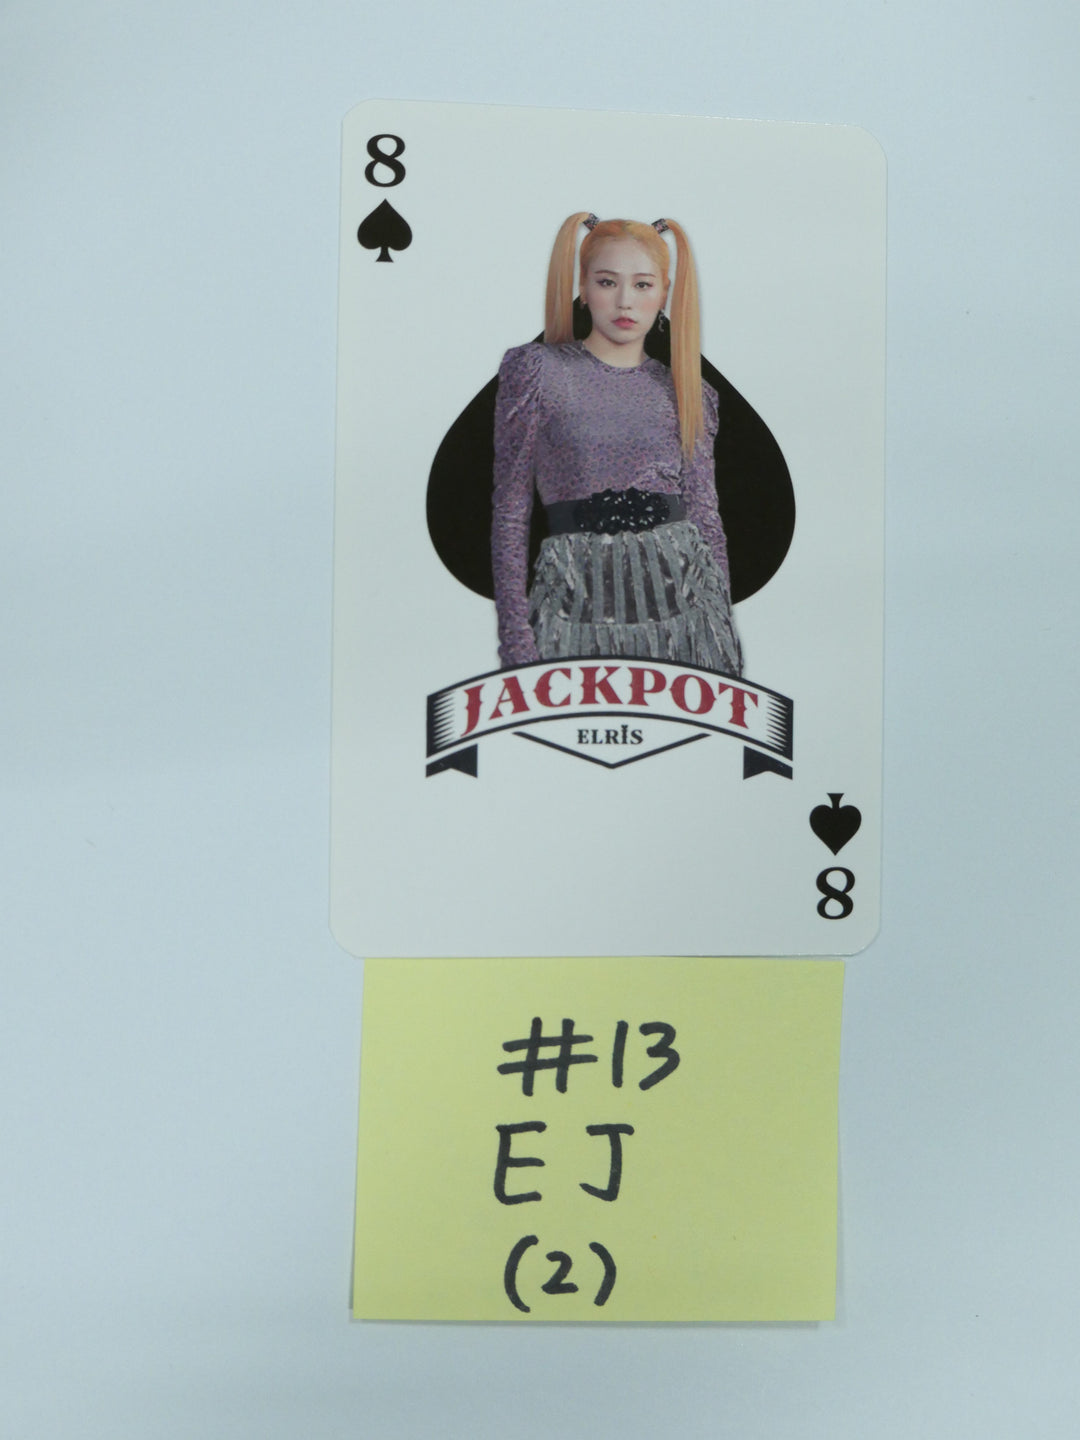 エリス「ジャックポット」 - 公式フォトカード